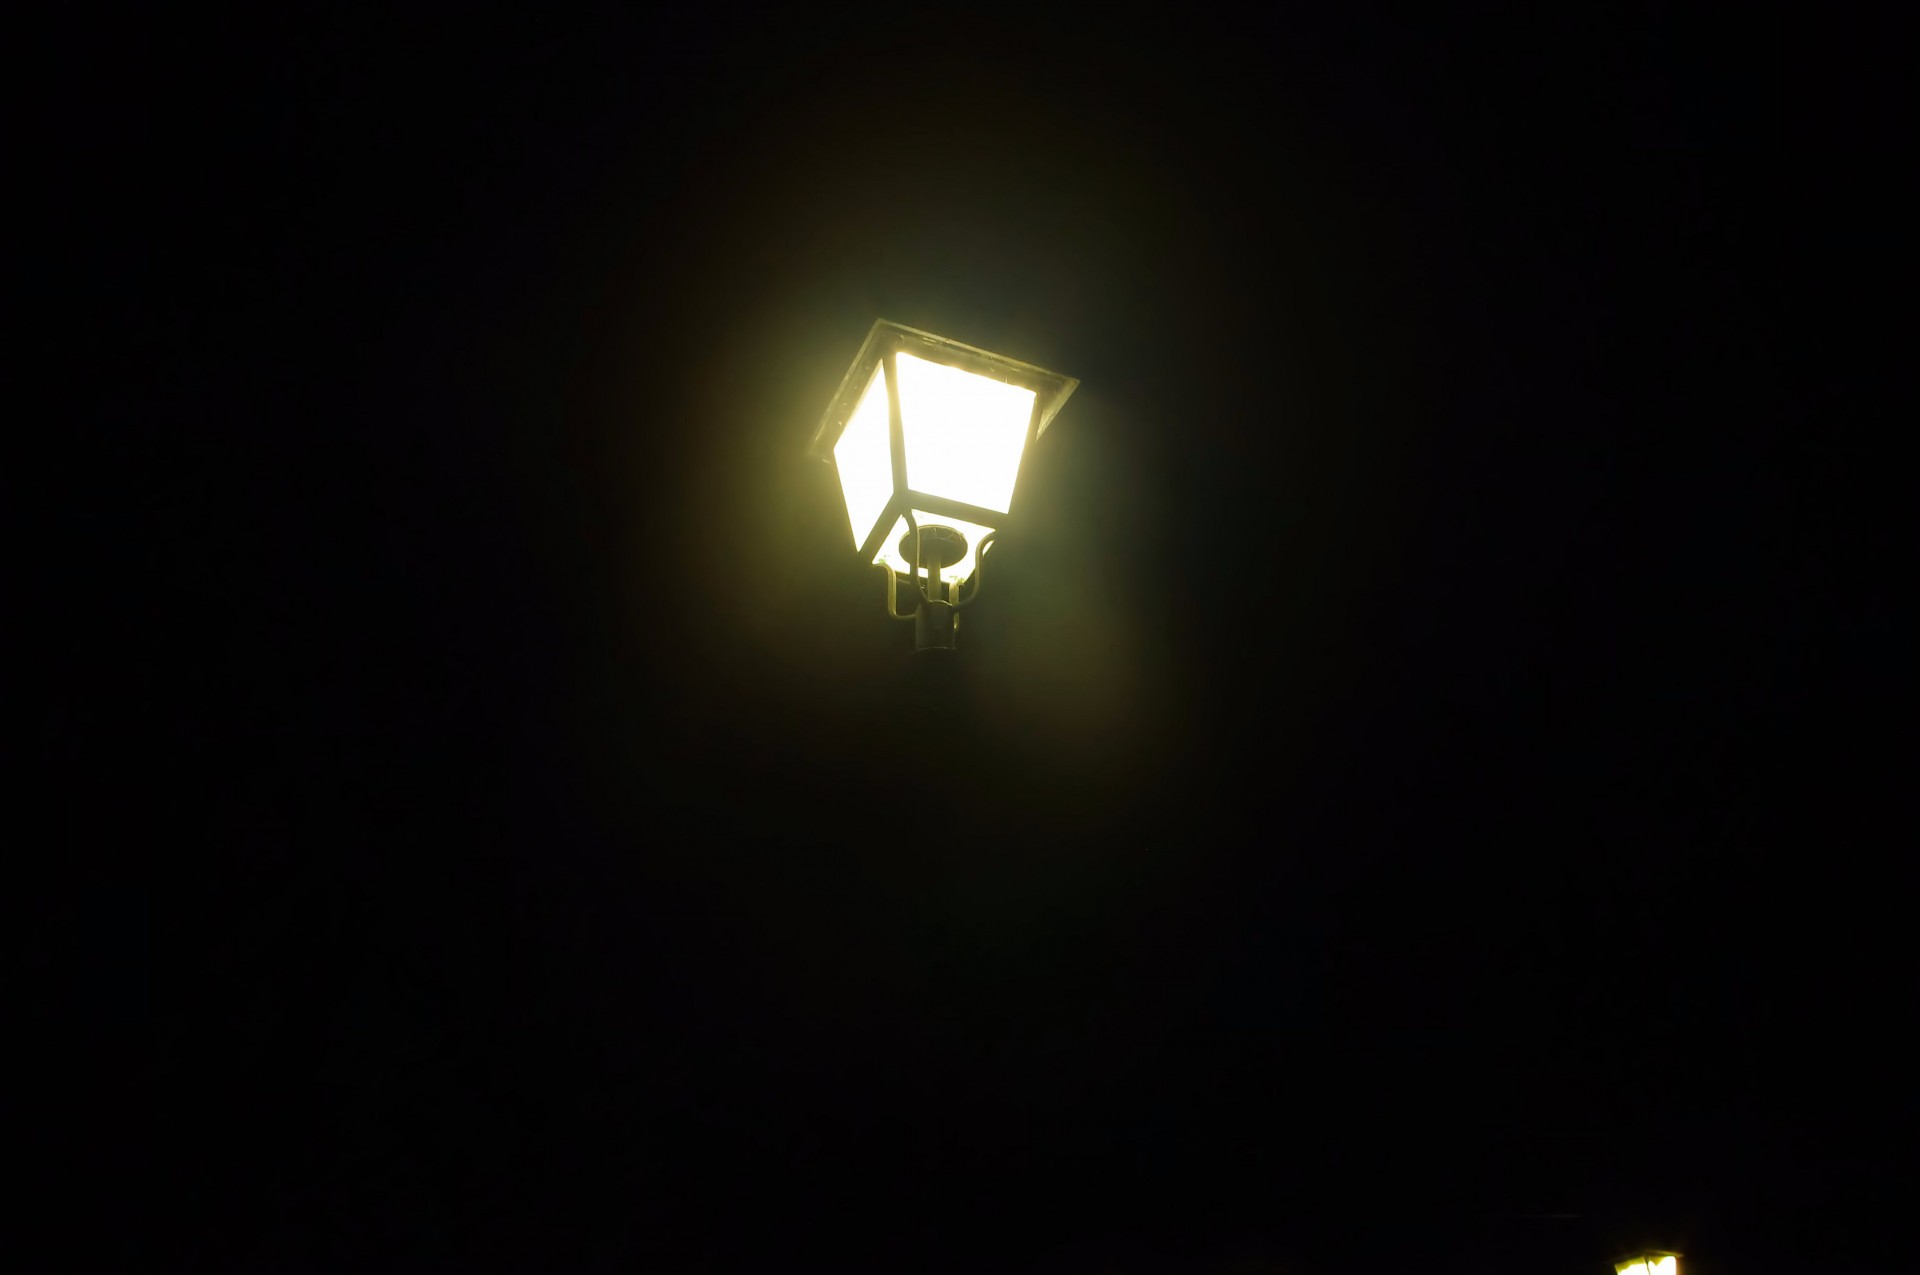 Spooky уличный фонарь